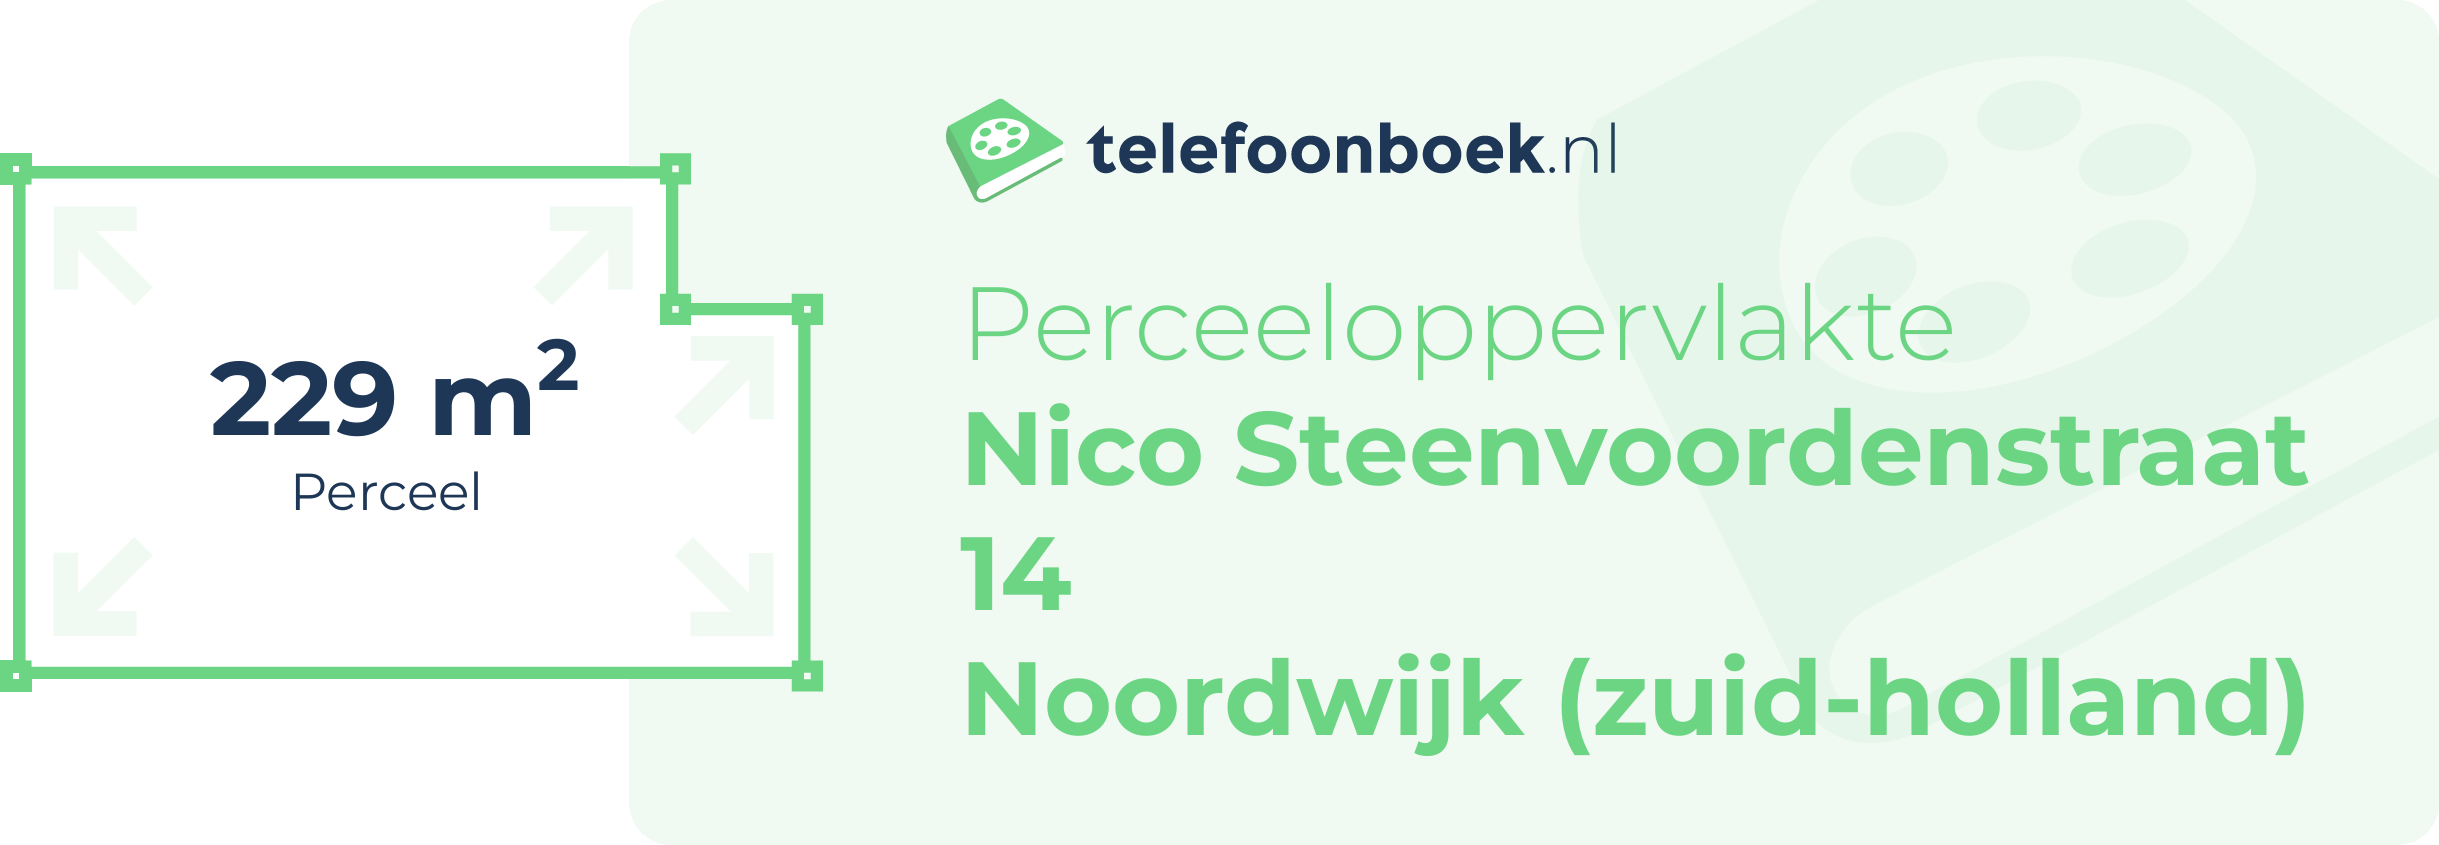 Perceeloppervlakte Nico Steenvoordenstraat 14 Noordwijk (Zuid-Holland)